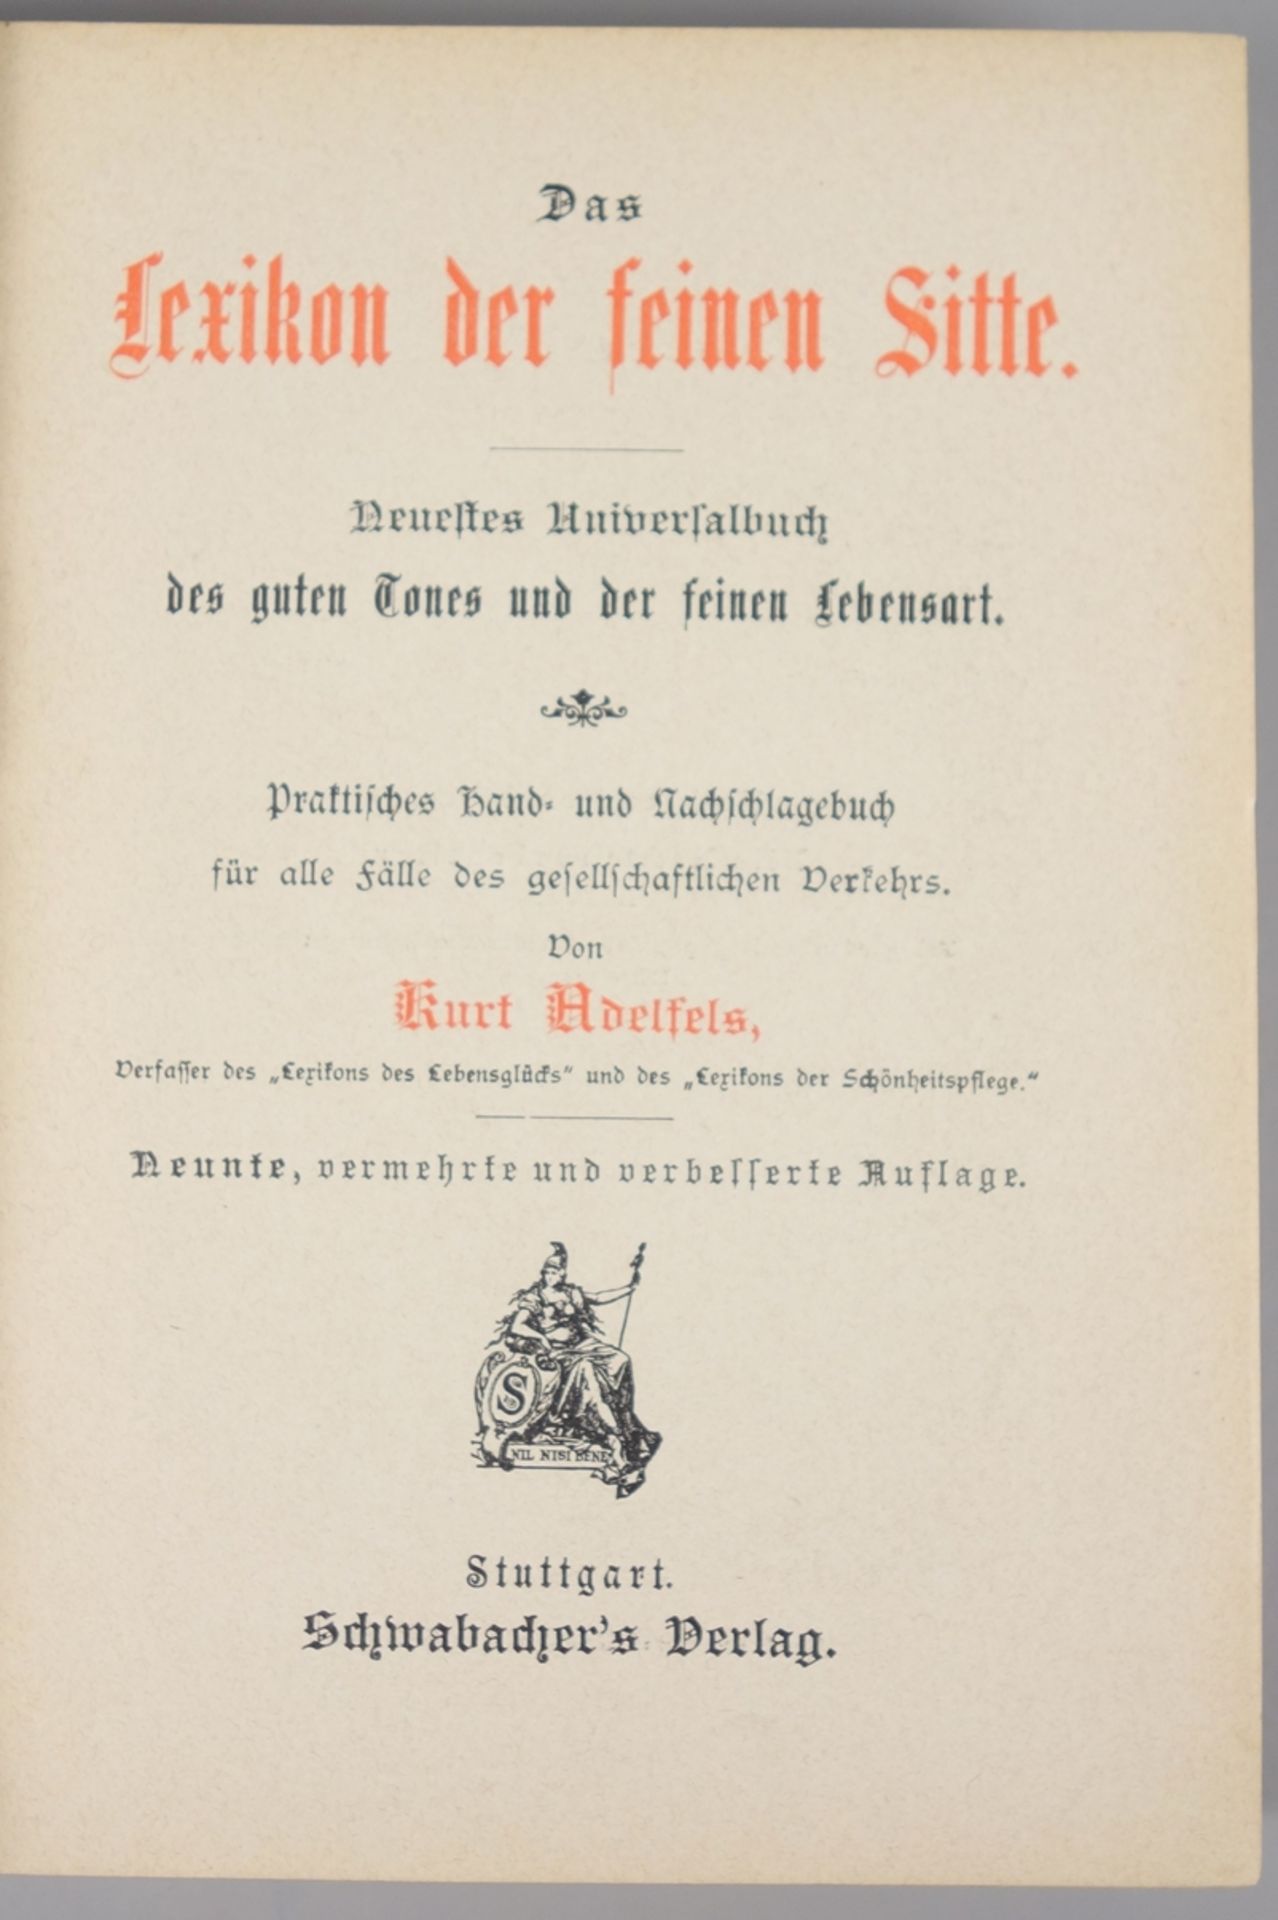 "Das Lexikon der feinen Sitte", Kurt Adelfels, um 1900 - Bild 2 aus 2